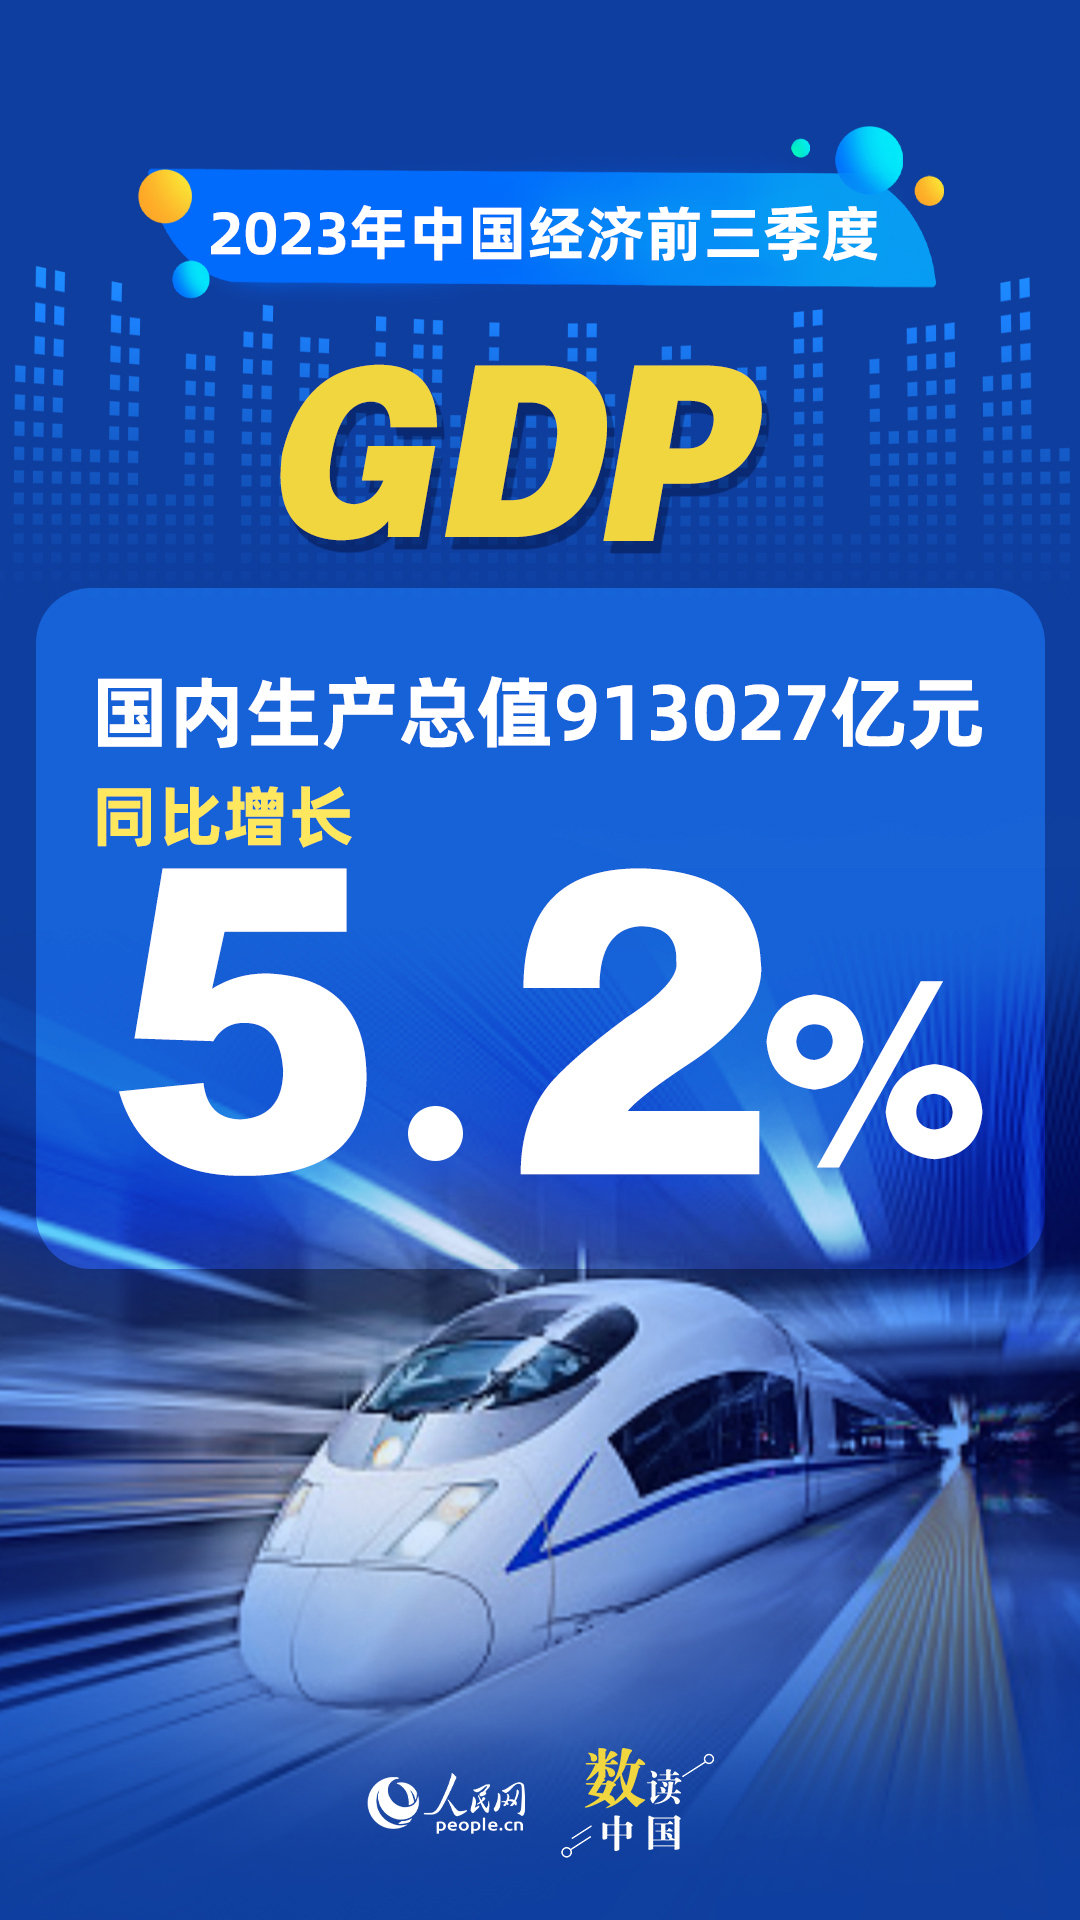 耀世官方：数读中国 | 前三季度国民经济持续恢复向好 积极因素累积增多